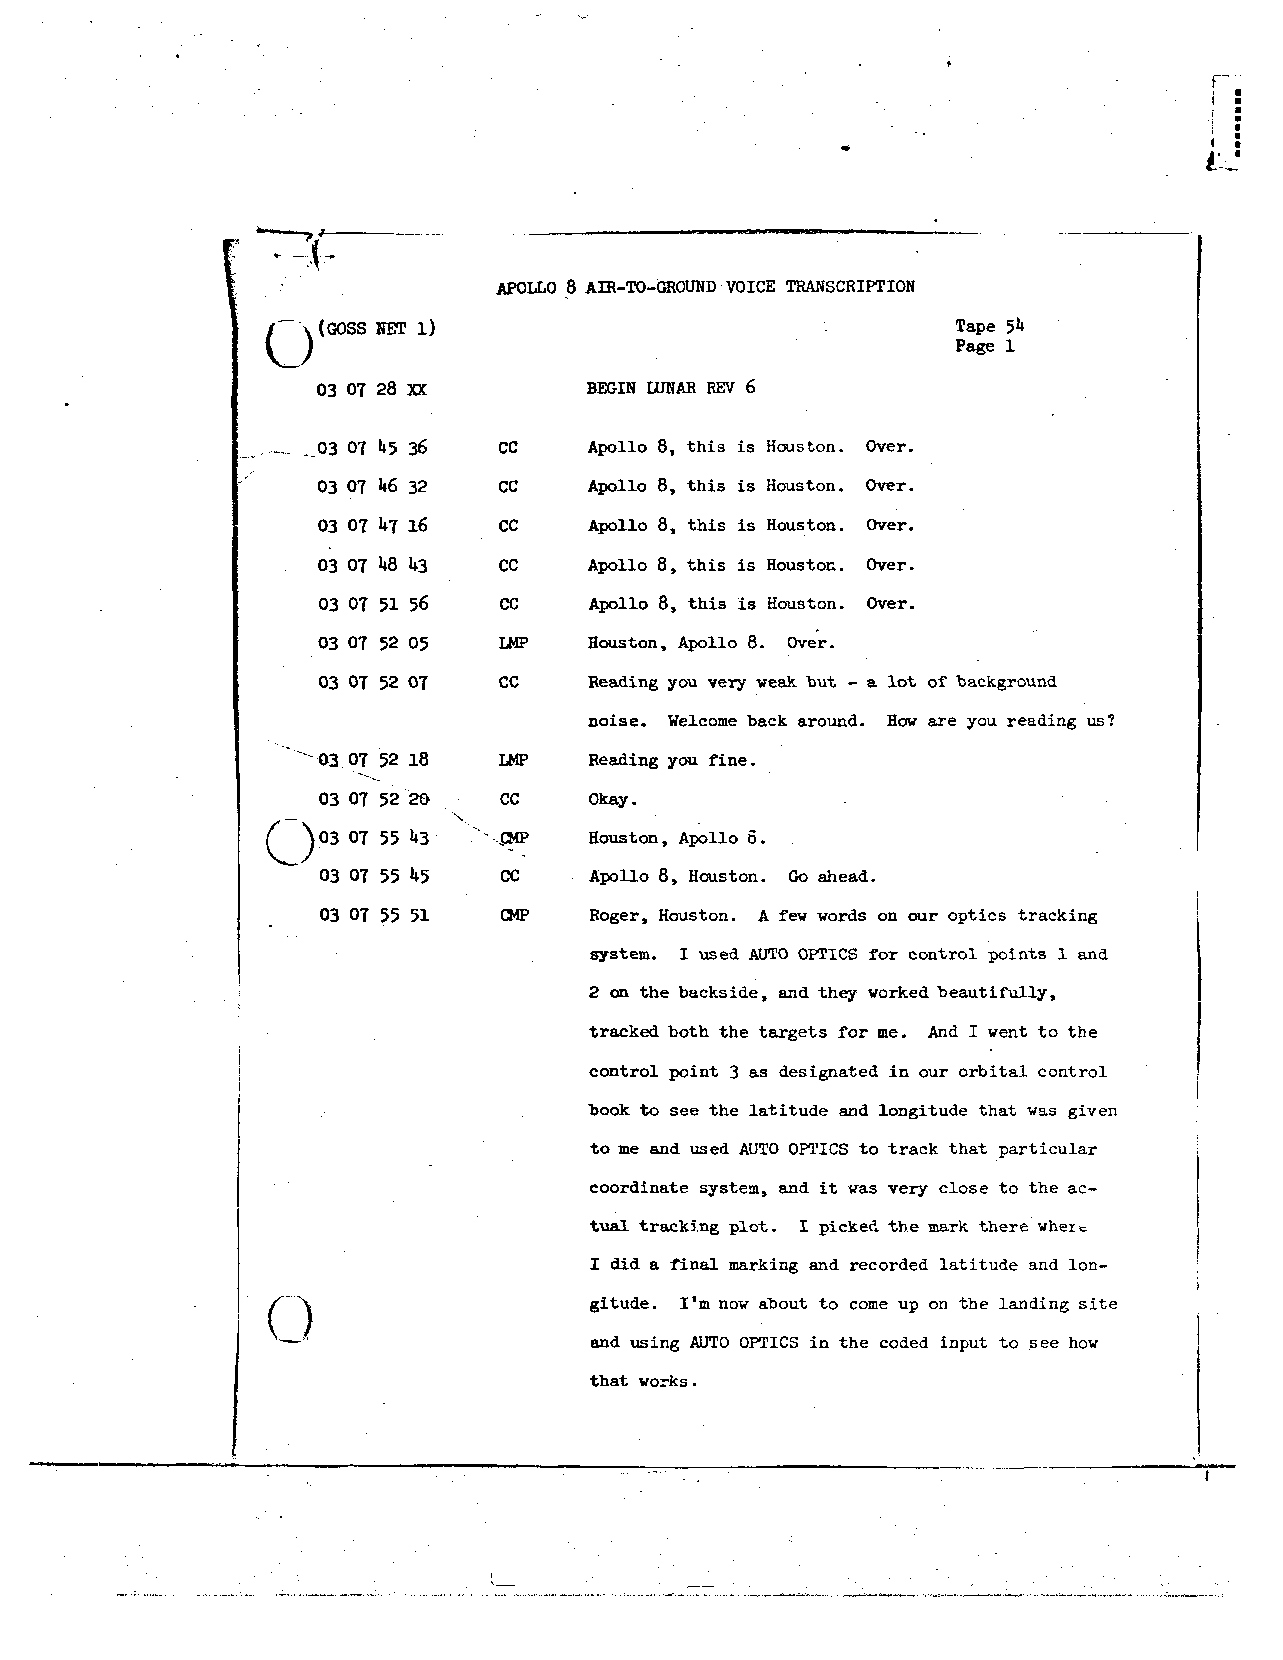 Page 426 of Apollo 8’s original transcript